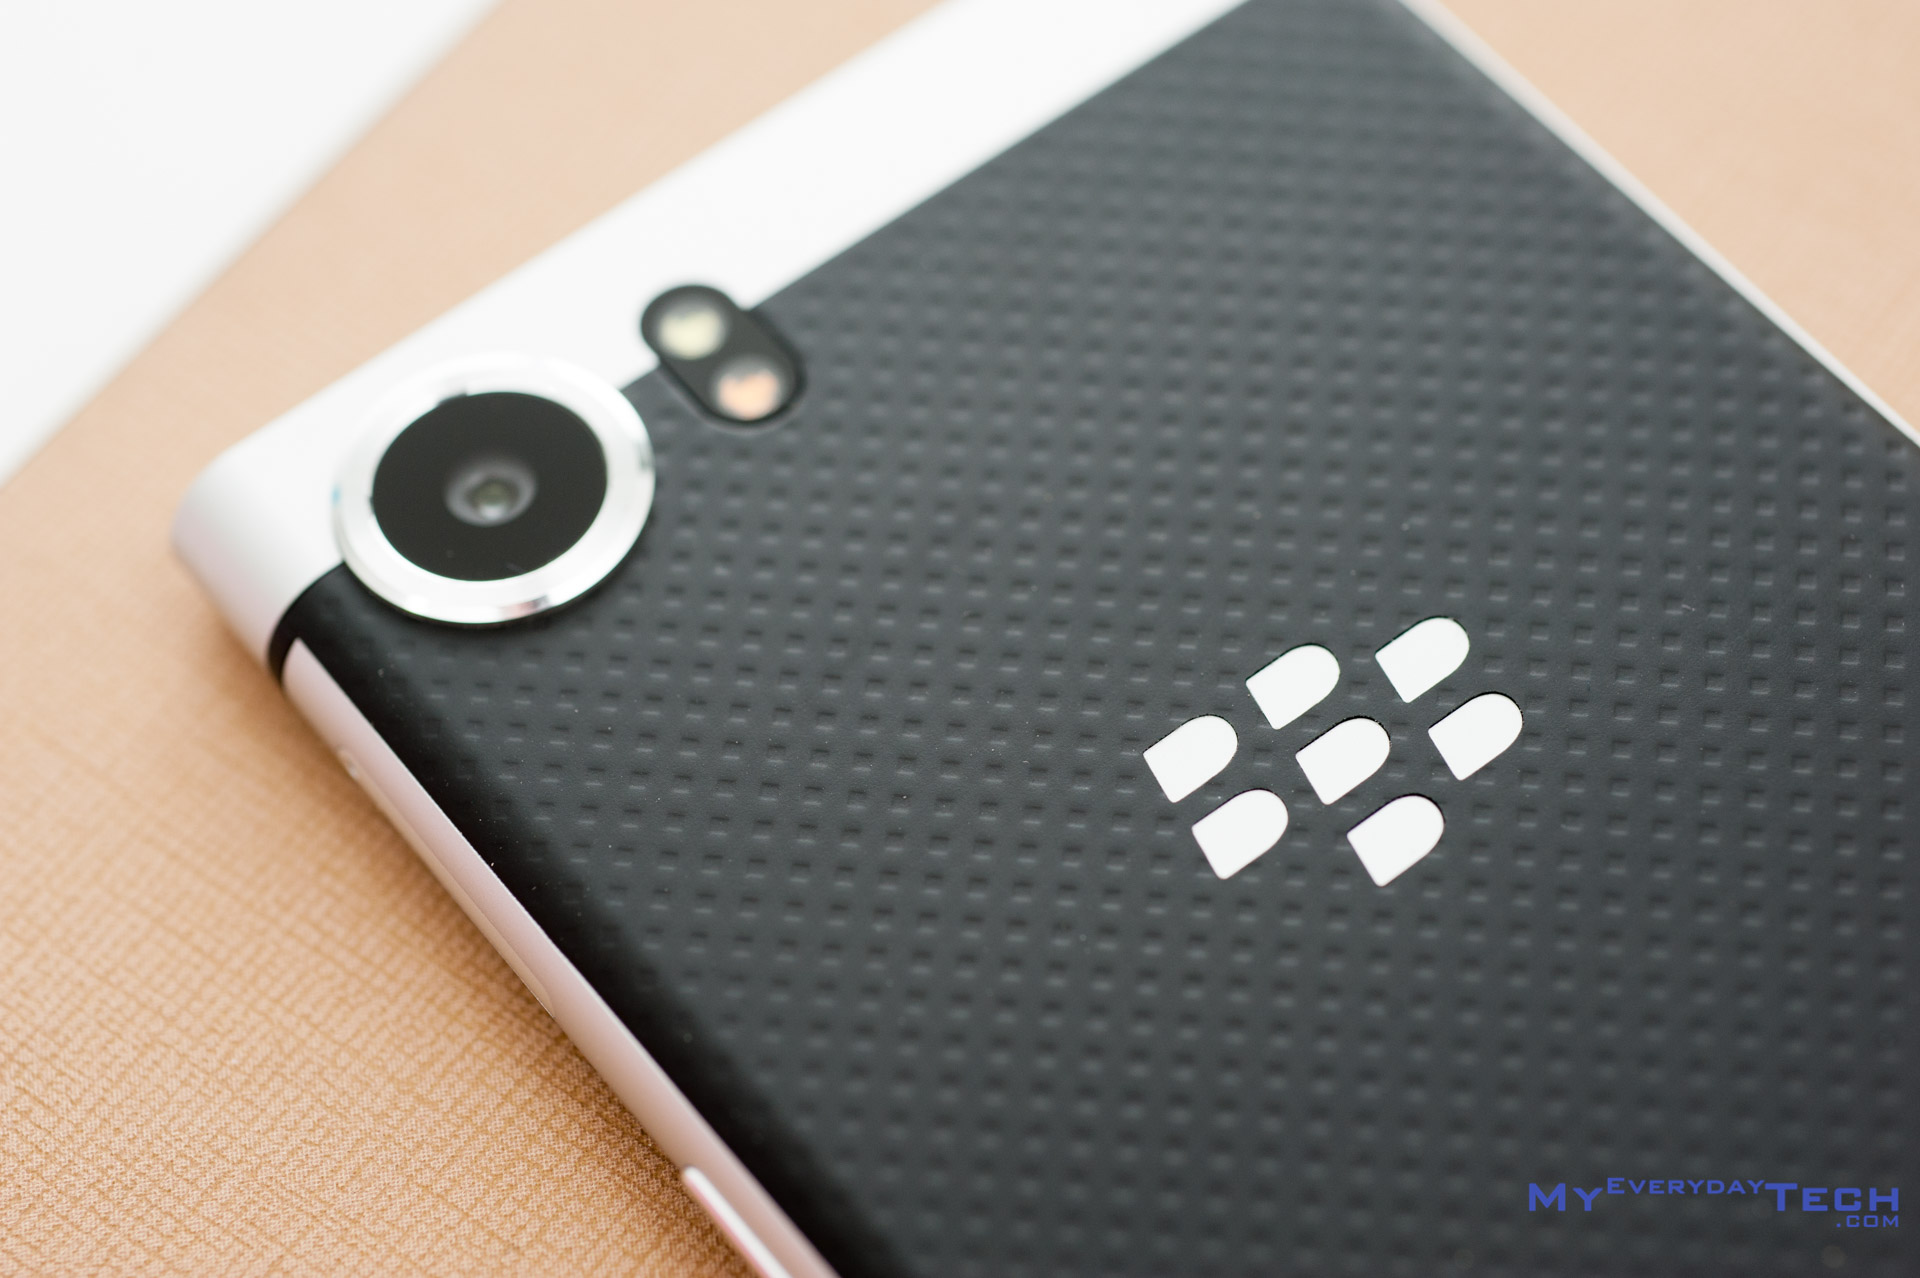 BlackBerry KEYone review